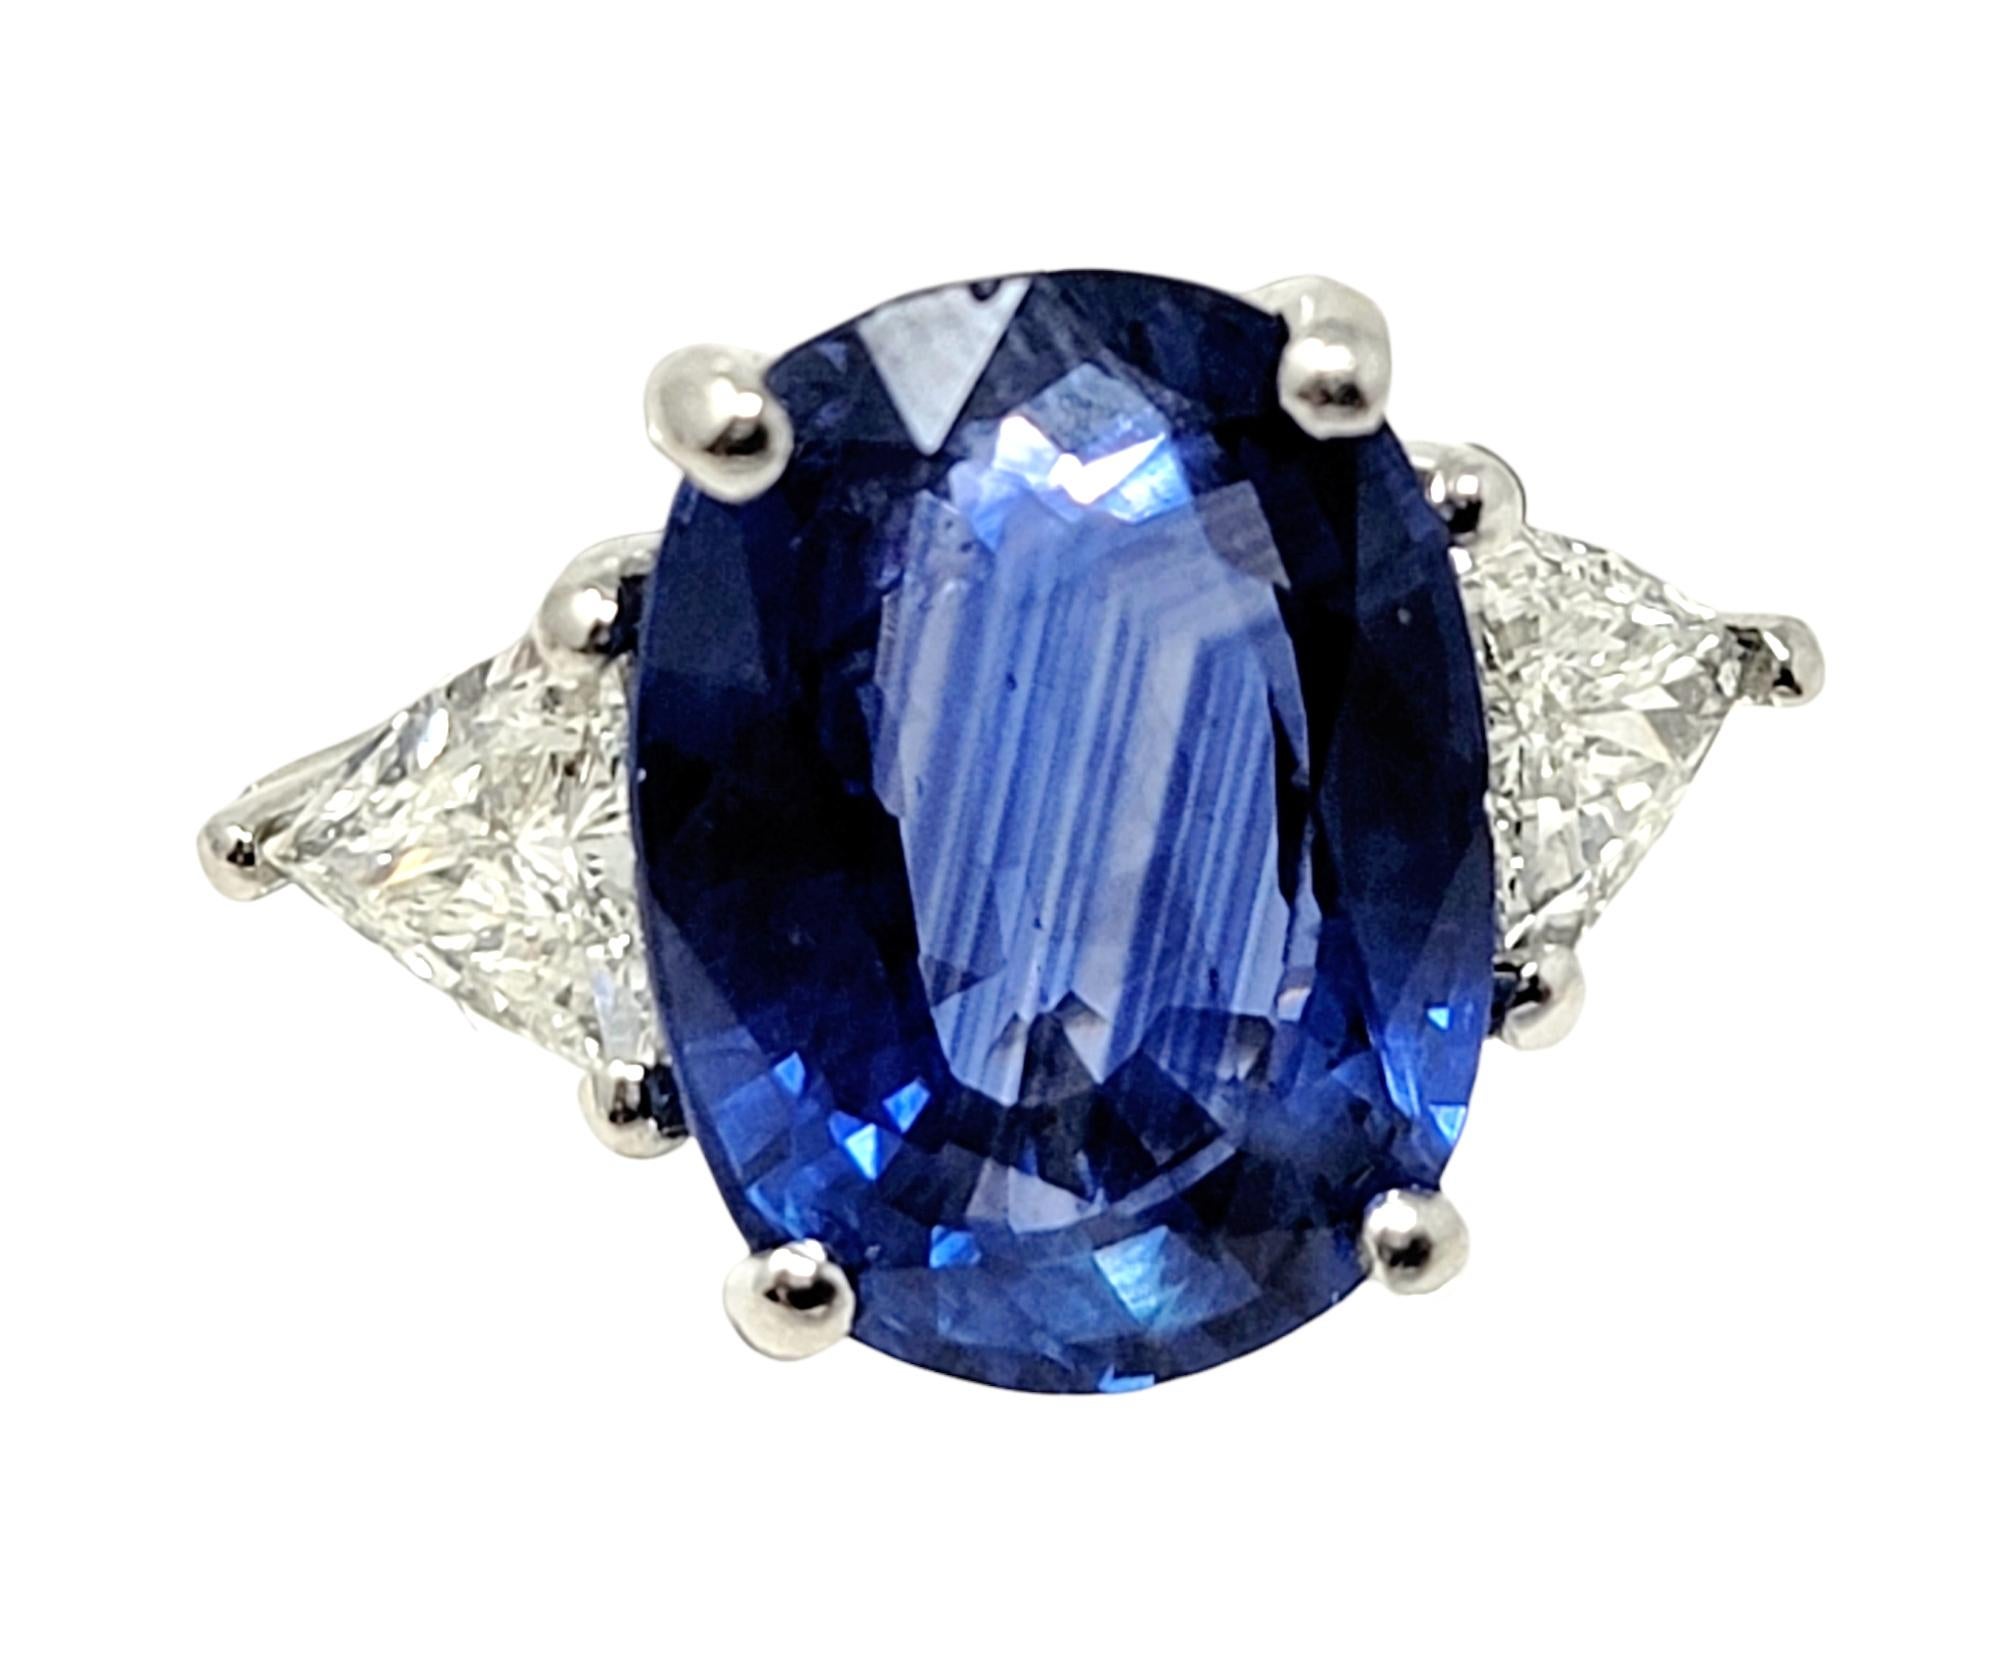 Dieser unglaubliche Dreisteinring aus Saphir und Diamant wird Ihnen den Atem rauben. Dies ist ein wirklich außergewöhnliches Stück mit verblüffend feinen Details. Der leuchtend blaue Saphirstein im Kontrast zu den strahlend weißen Naturdiamanten